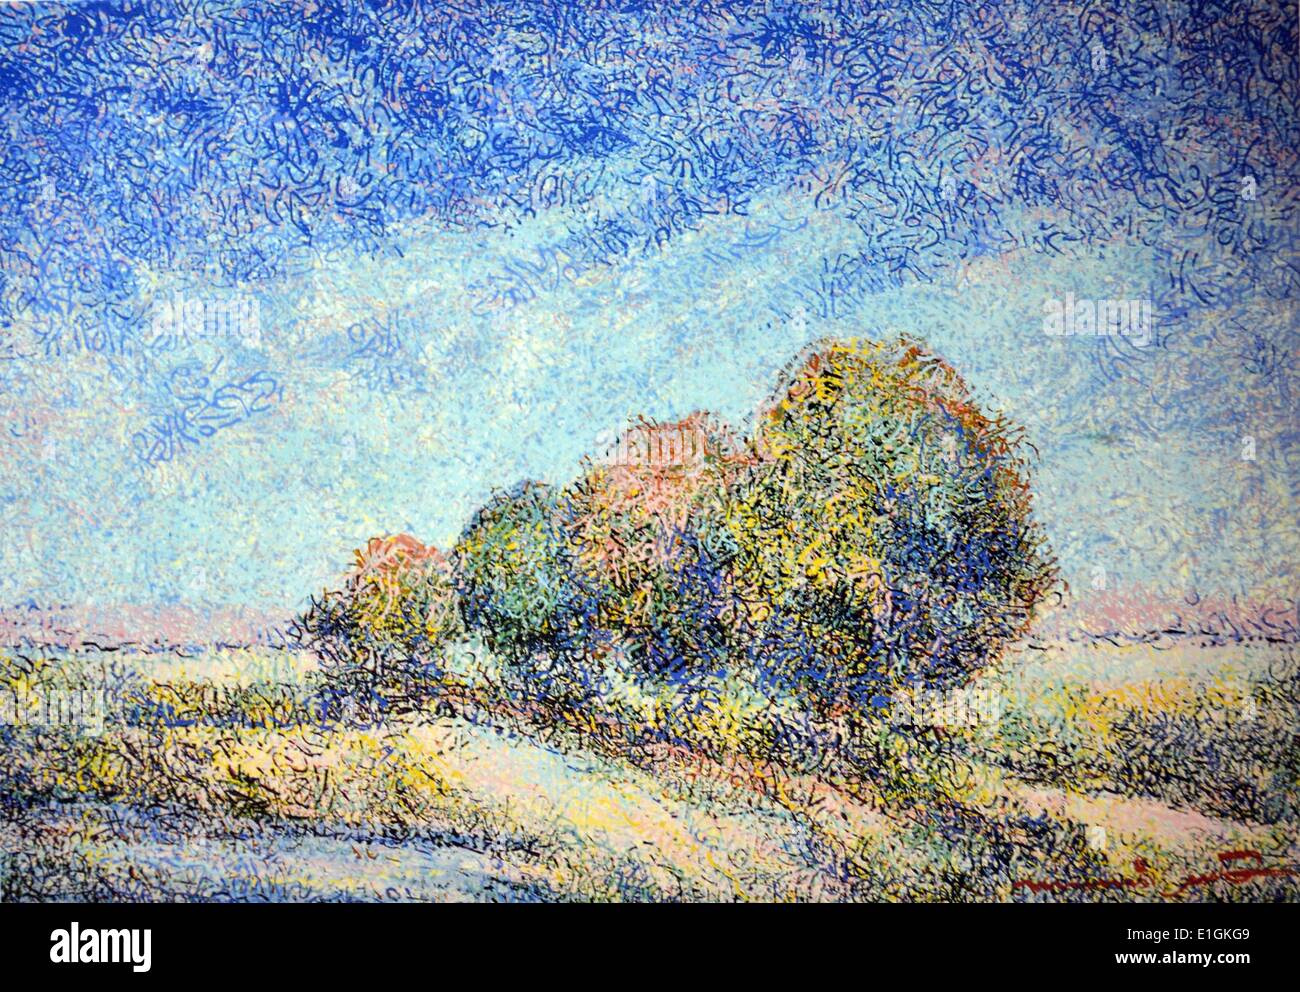 Manuel Rodriguez, SR. Pastel Landscape, 1992. Oil on canvas. Stock Photo